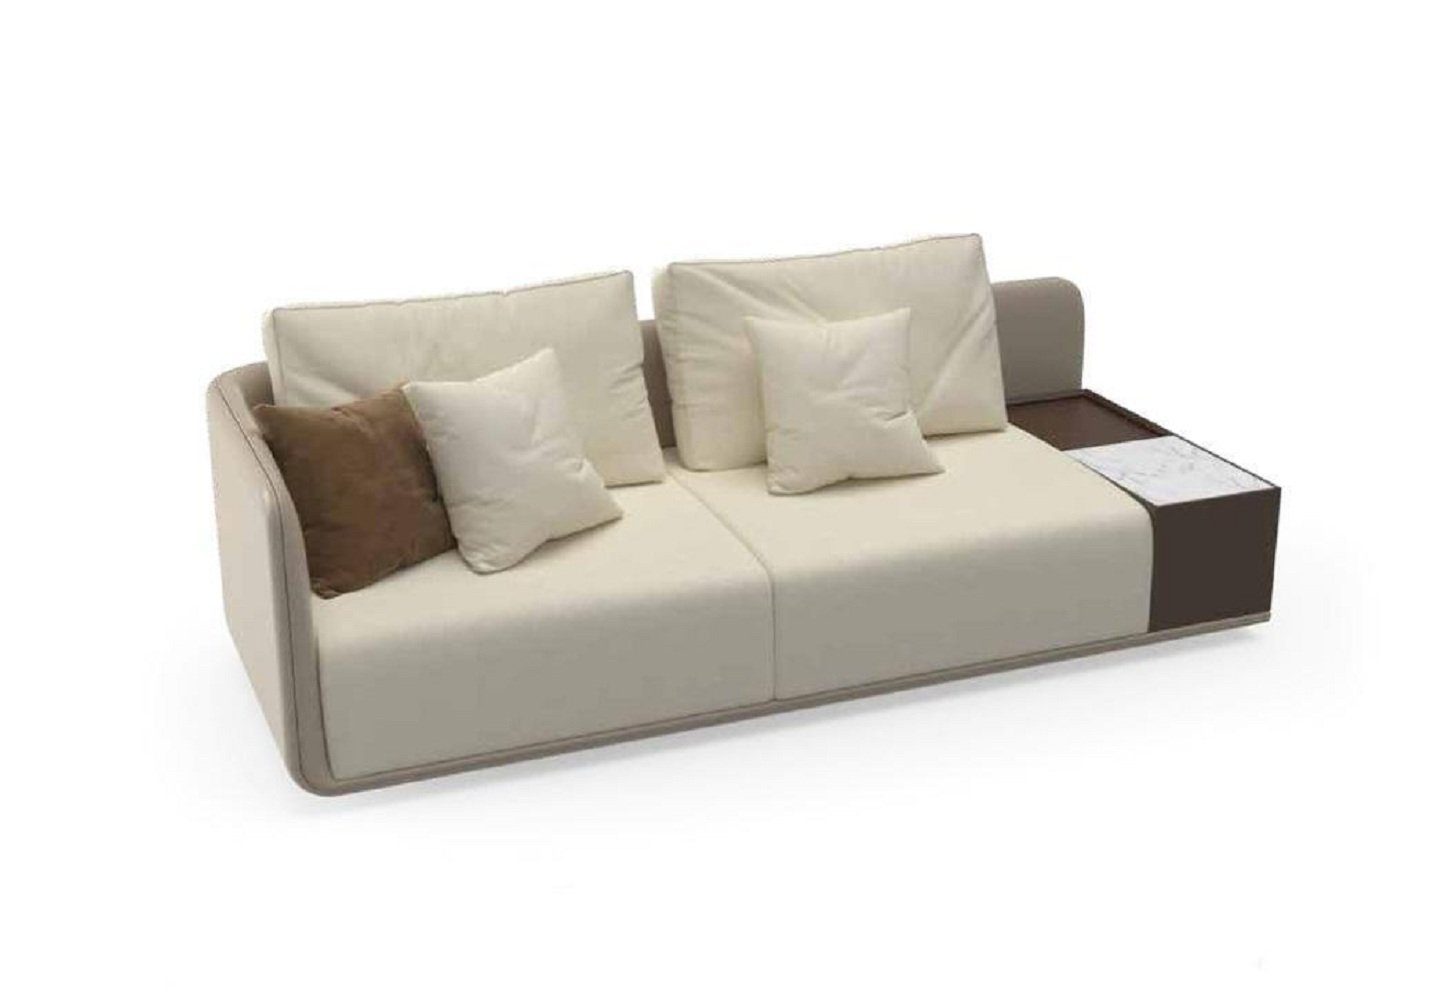 JVmoebel 3-Sitzer Luxus Sofa 3 Sitzer Couch Modern Polster 3 Sitzer Textil Couchen Möbel, 1 Teile, Made in Europa